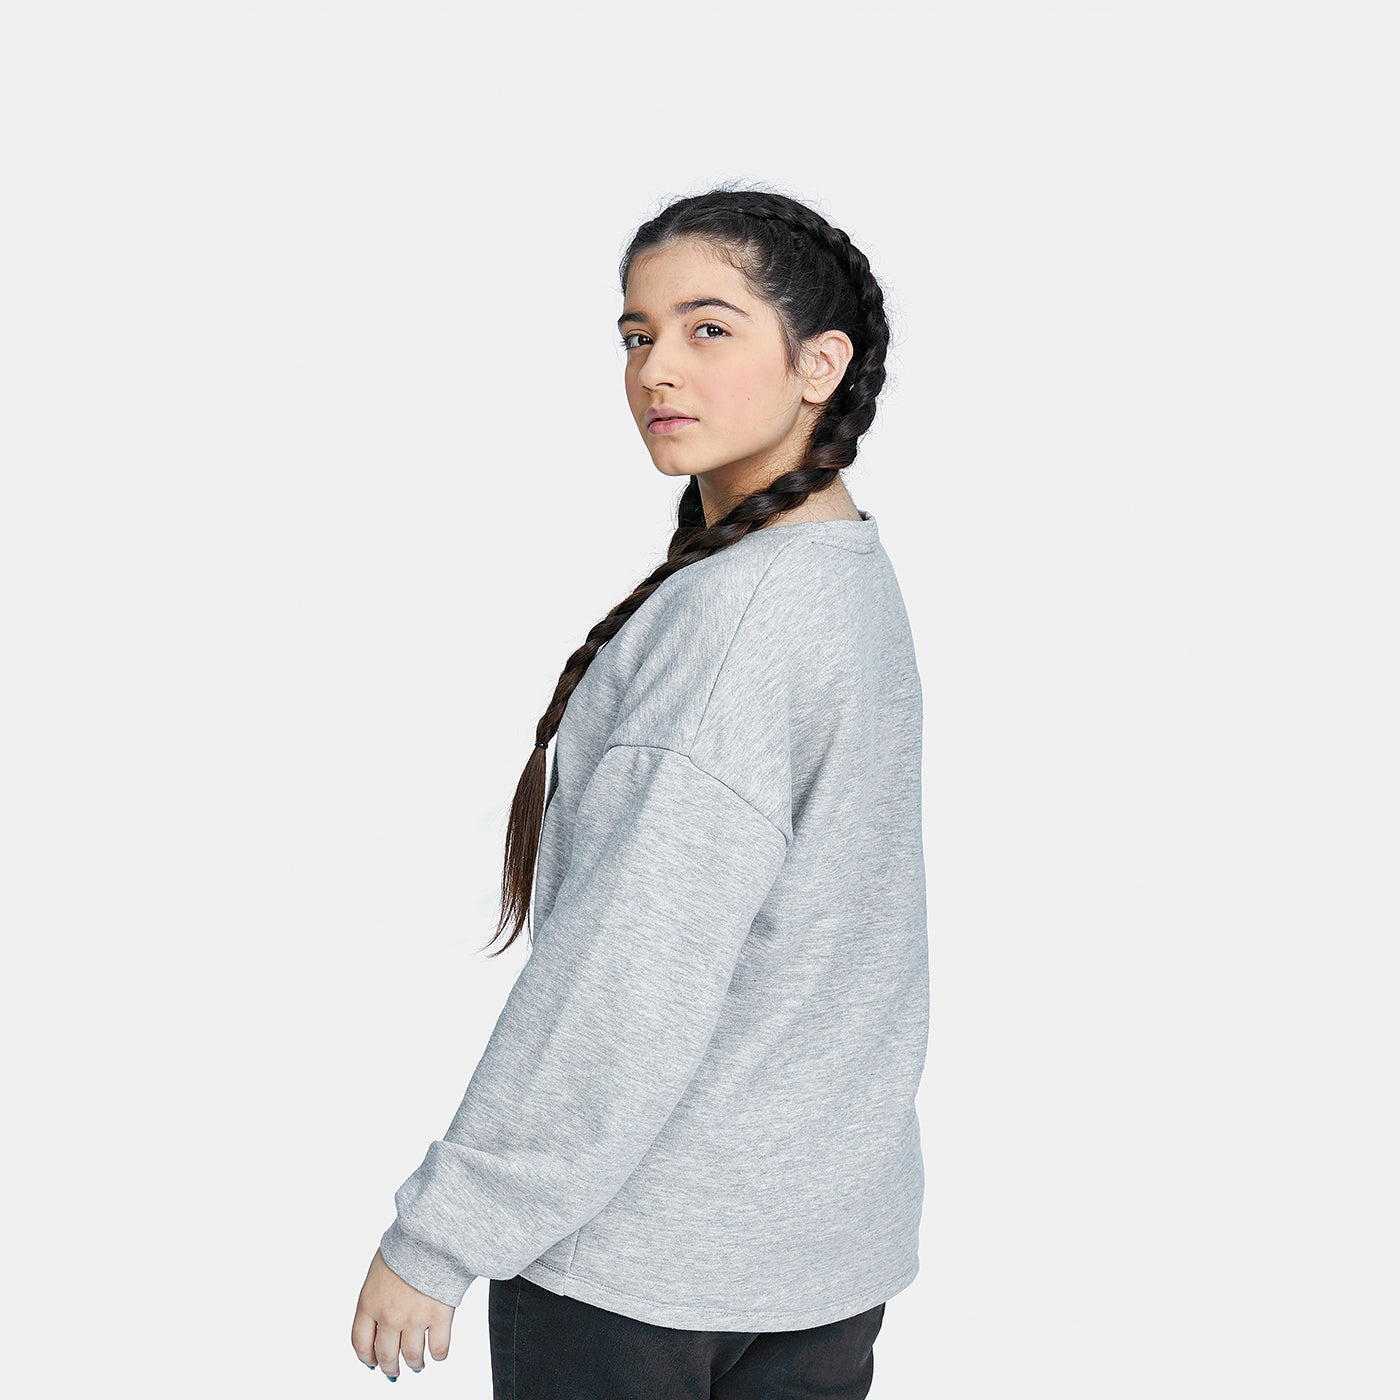 Girls' Fleece Sweatshirt